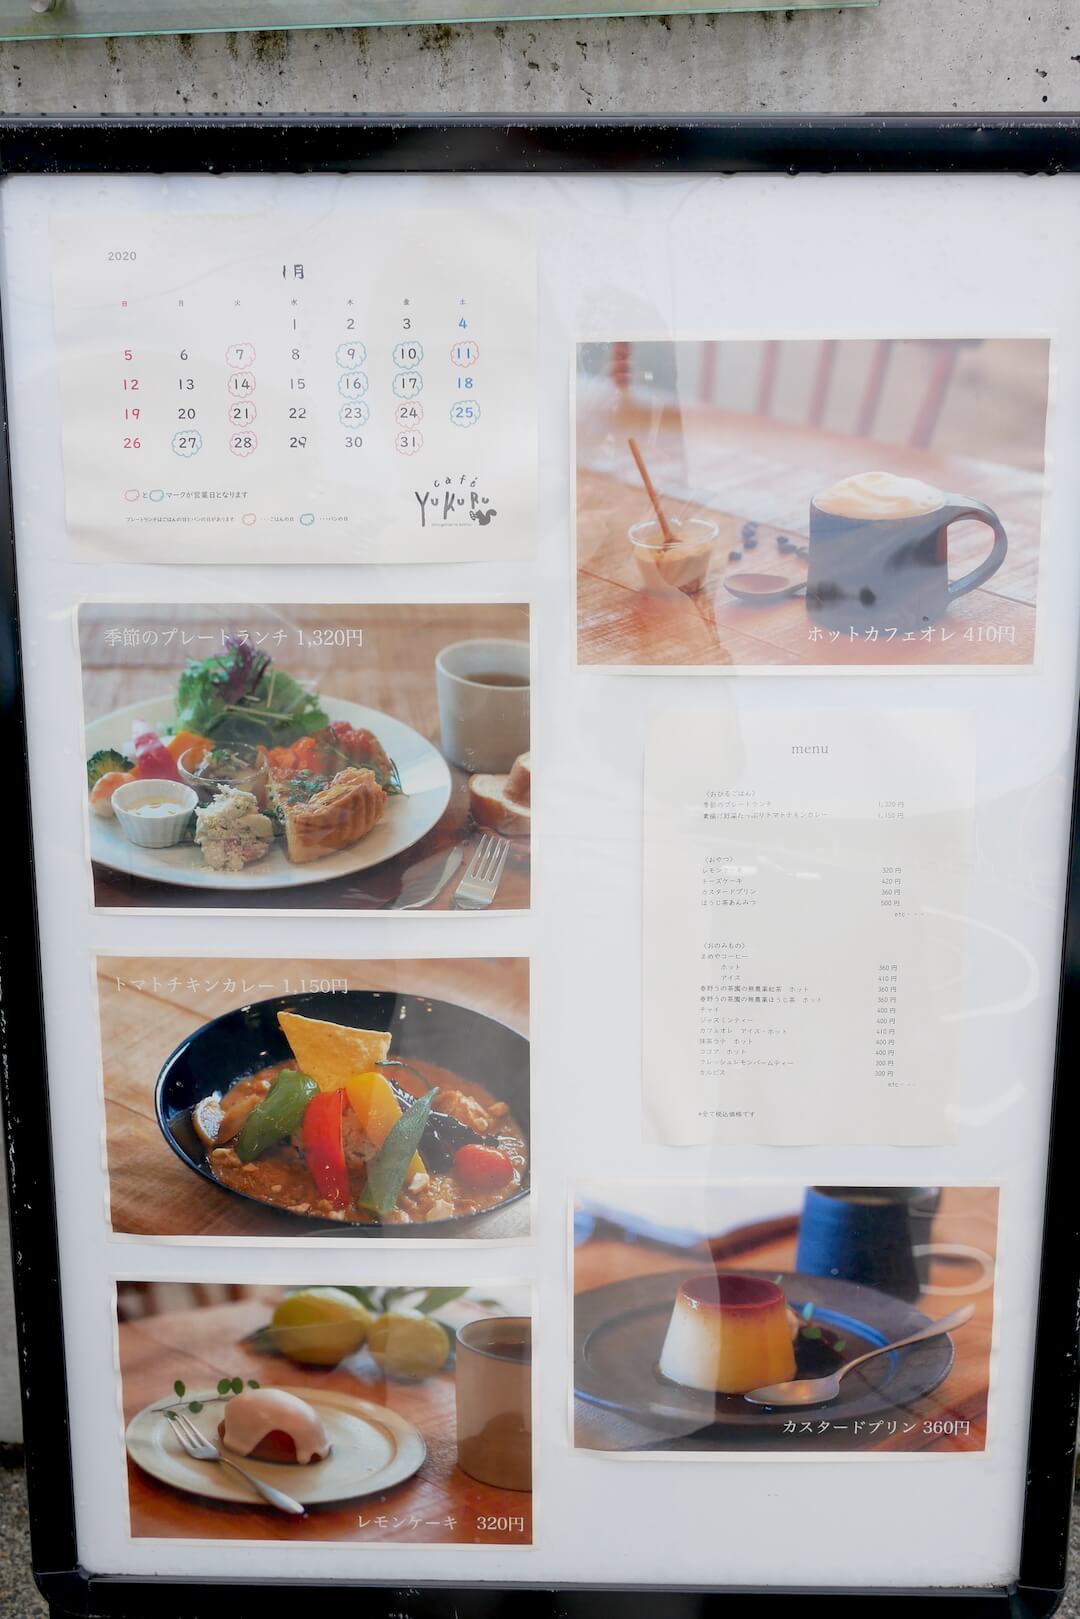 cafe Yukuru『おひるごはんとおやつのお店』でランチ！ 浜松市カフェ 大人 北欧 ナチュラル ランチ プリン